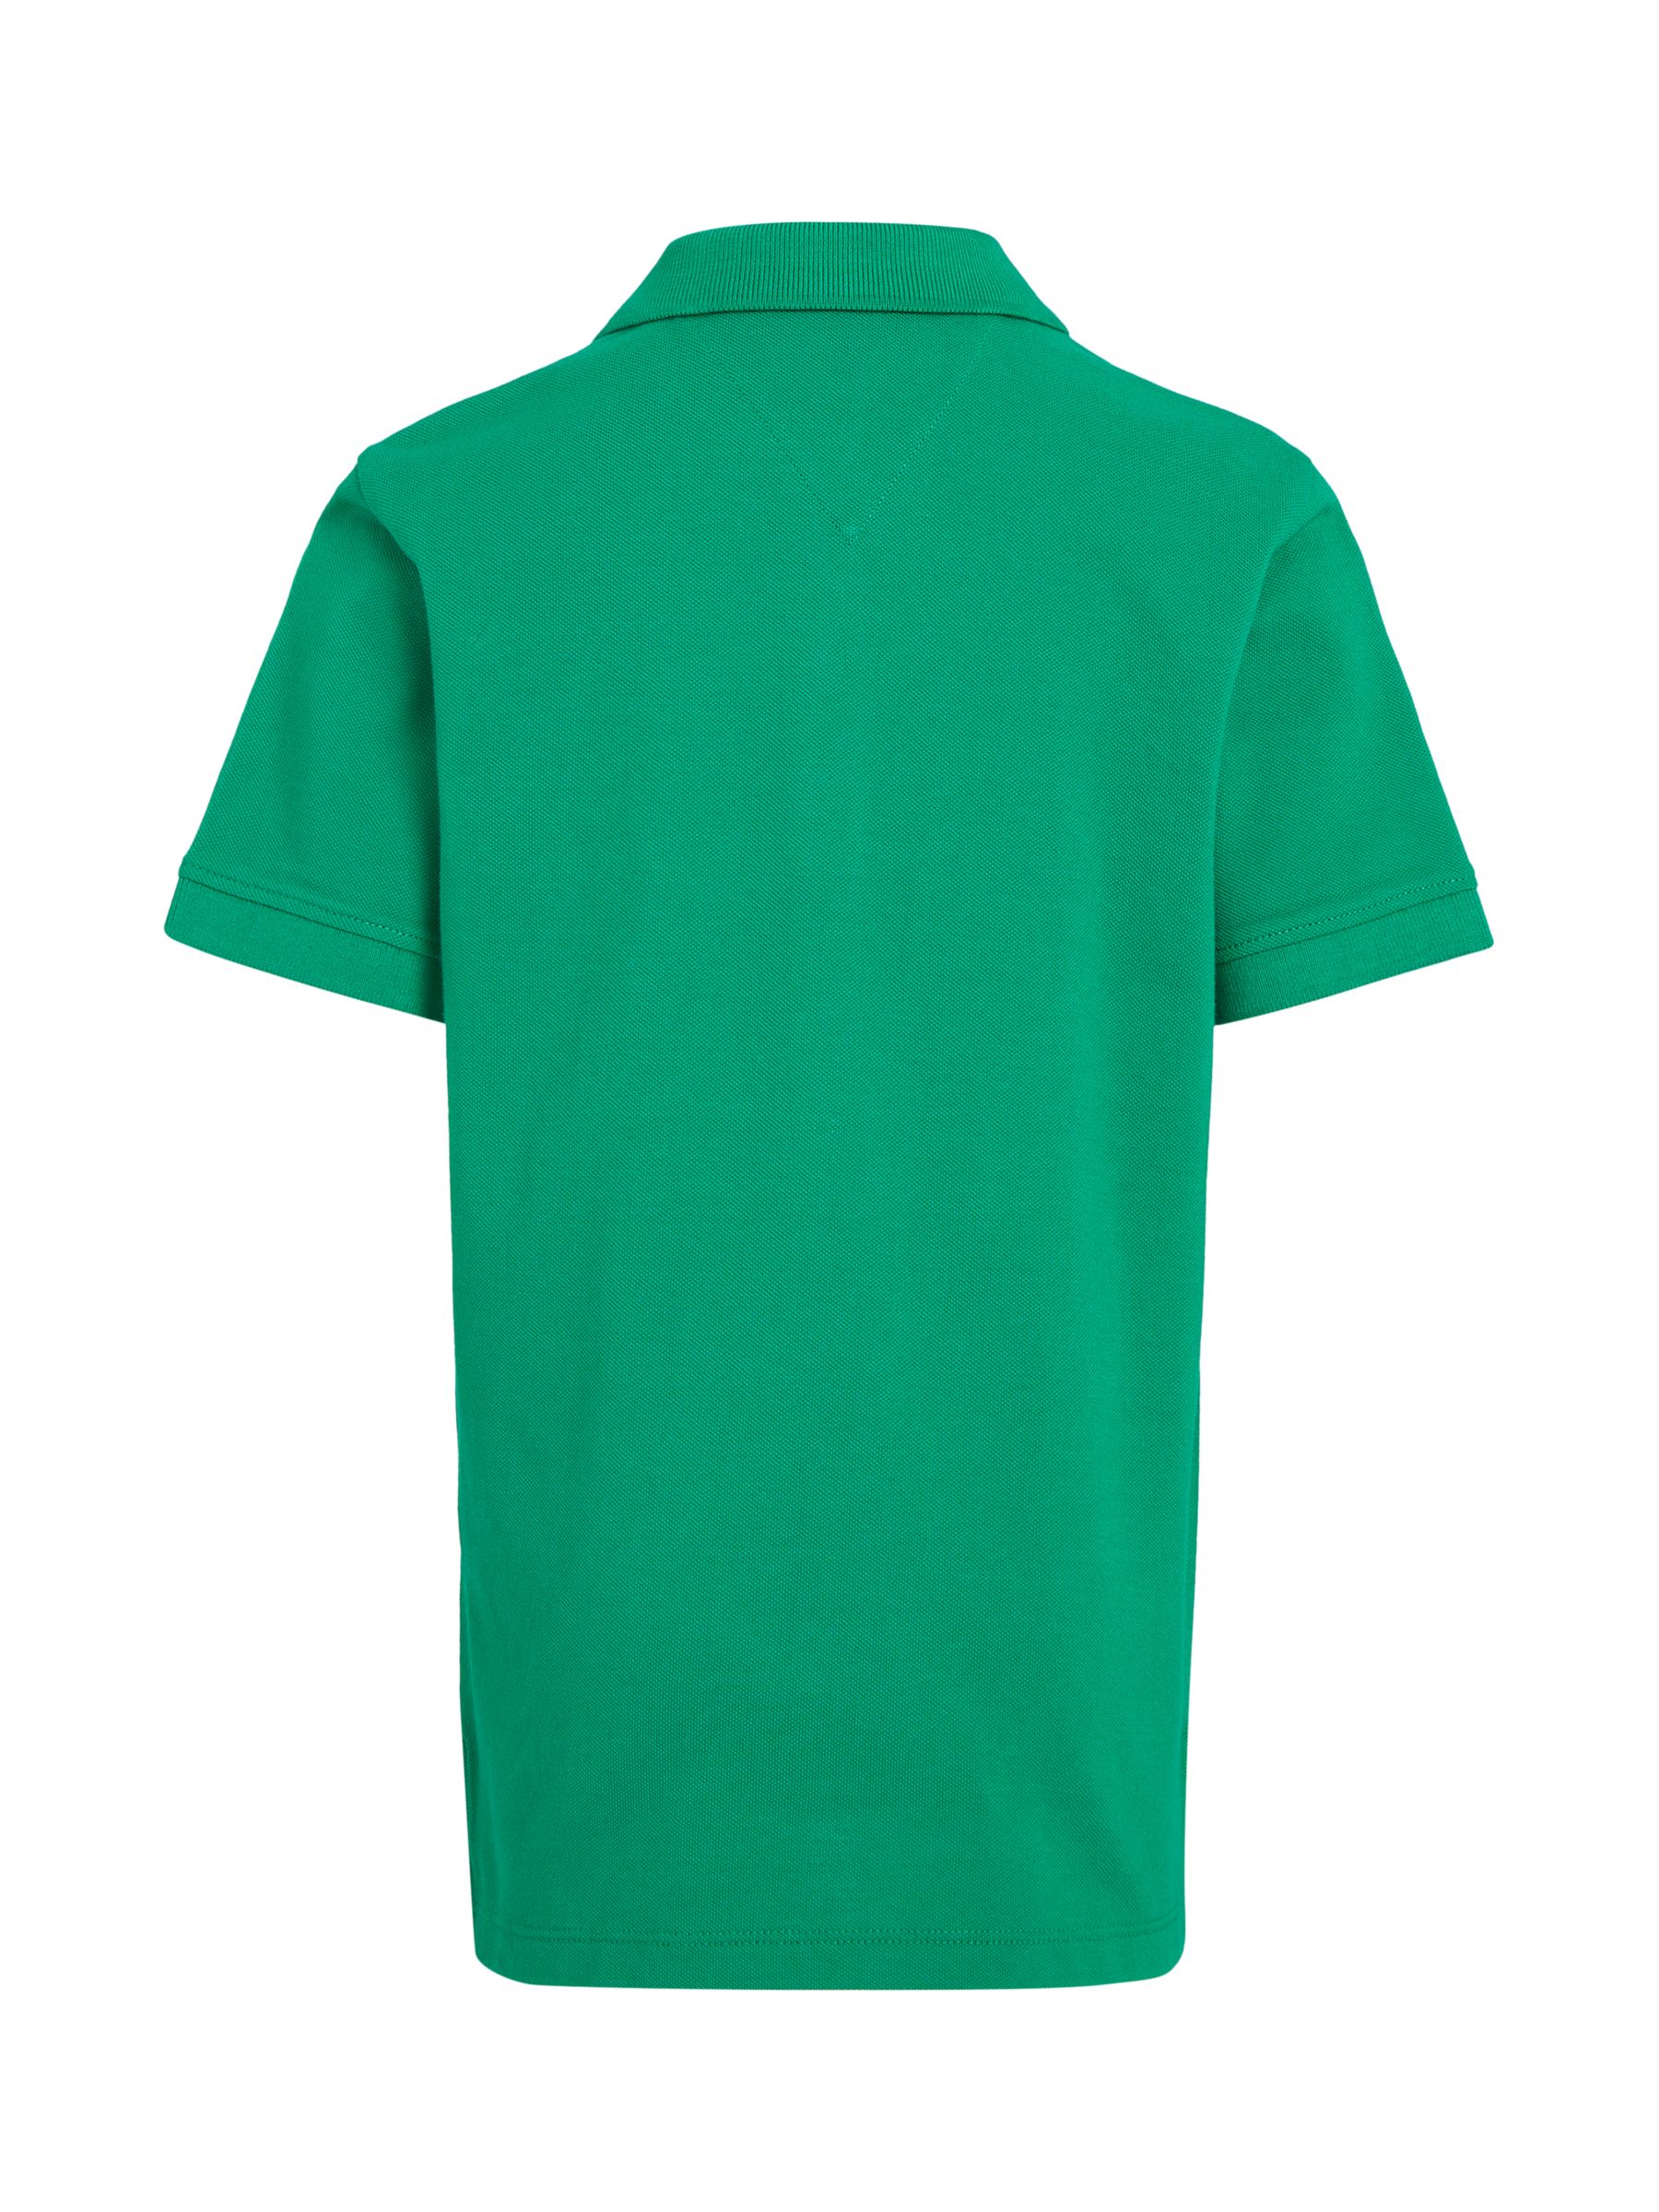 Buy Tommy Hilfiger Kids' Flag Logo Polo Shirt Online at johnlewis.com